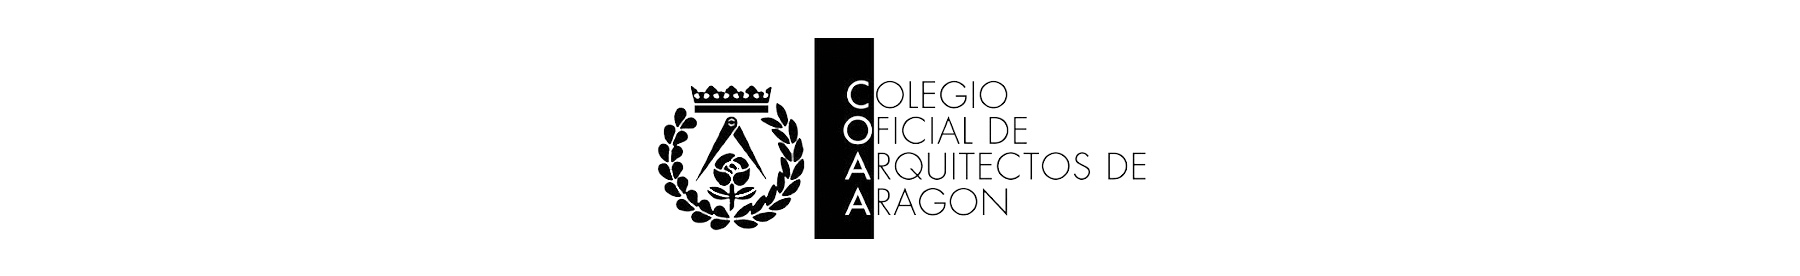 Logo Colegio Oficial de Arquitectos de Aragón